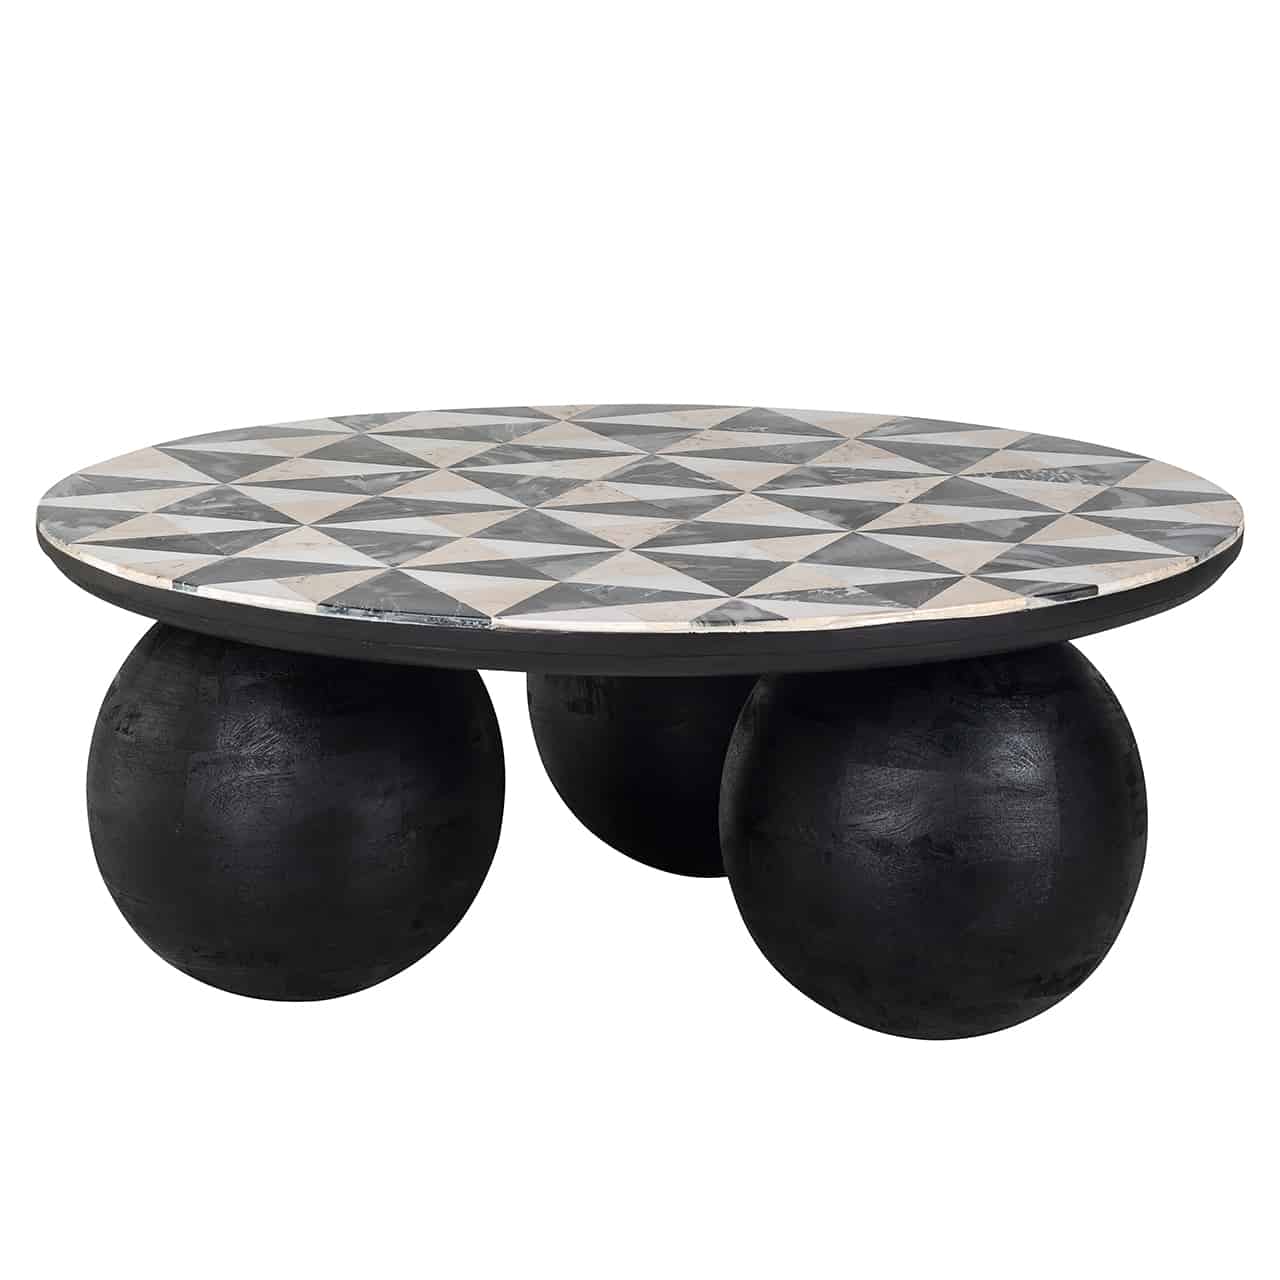 Runder Couchtisch mit Beinen aus drei großen schwarzen Kugeln, darauf eine runde Platte symetrisch besetzt mit schwarzen, weißen und rosa Dreicken. 